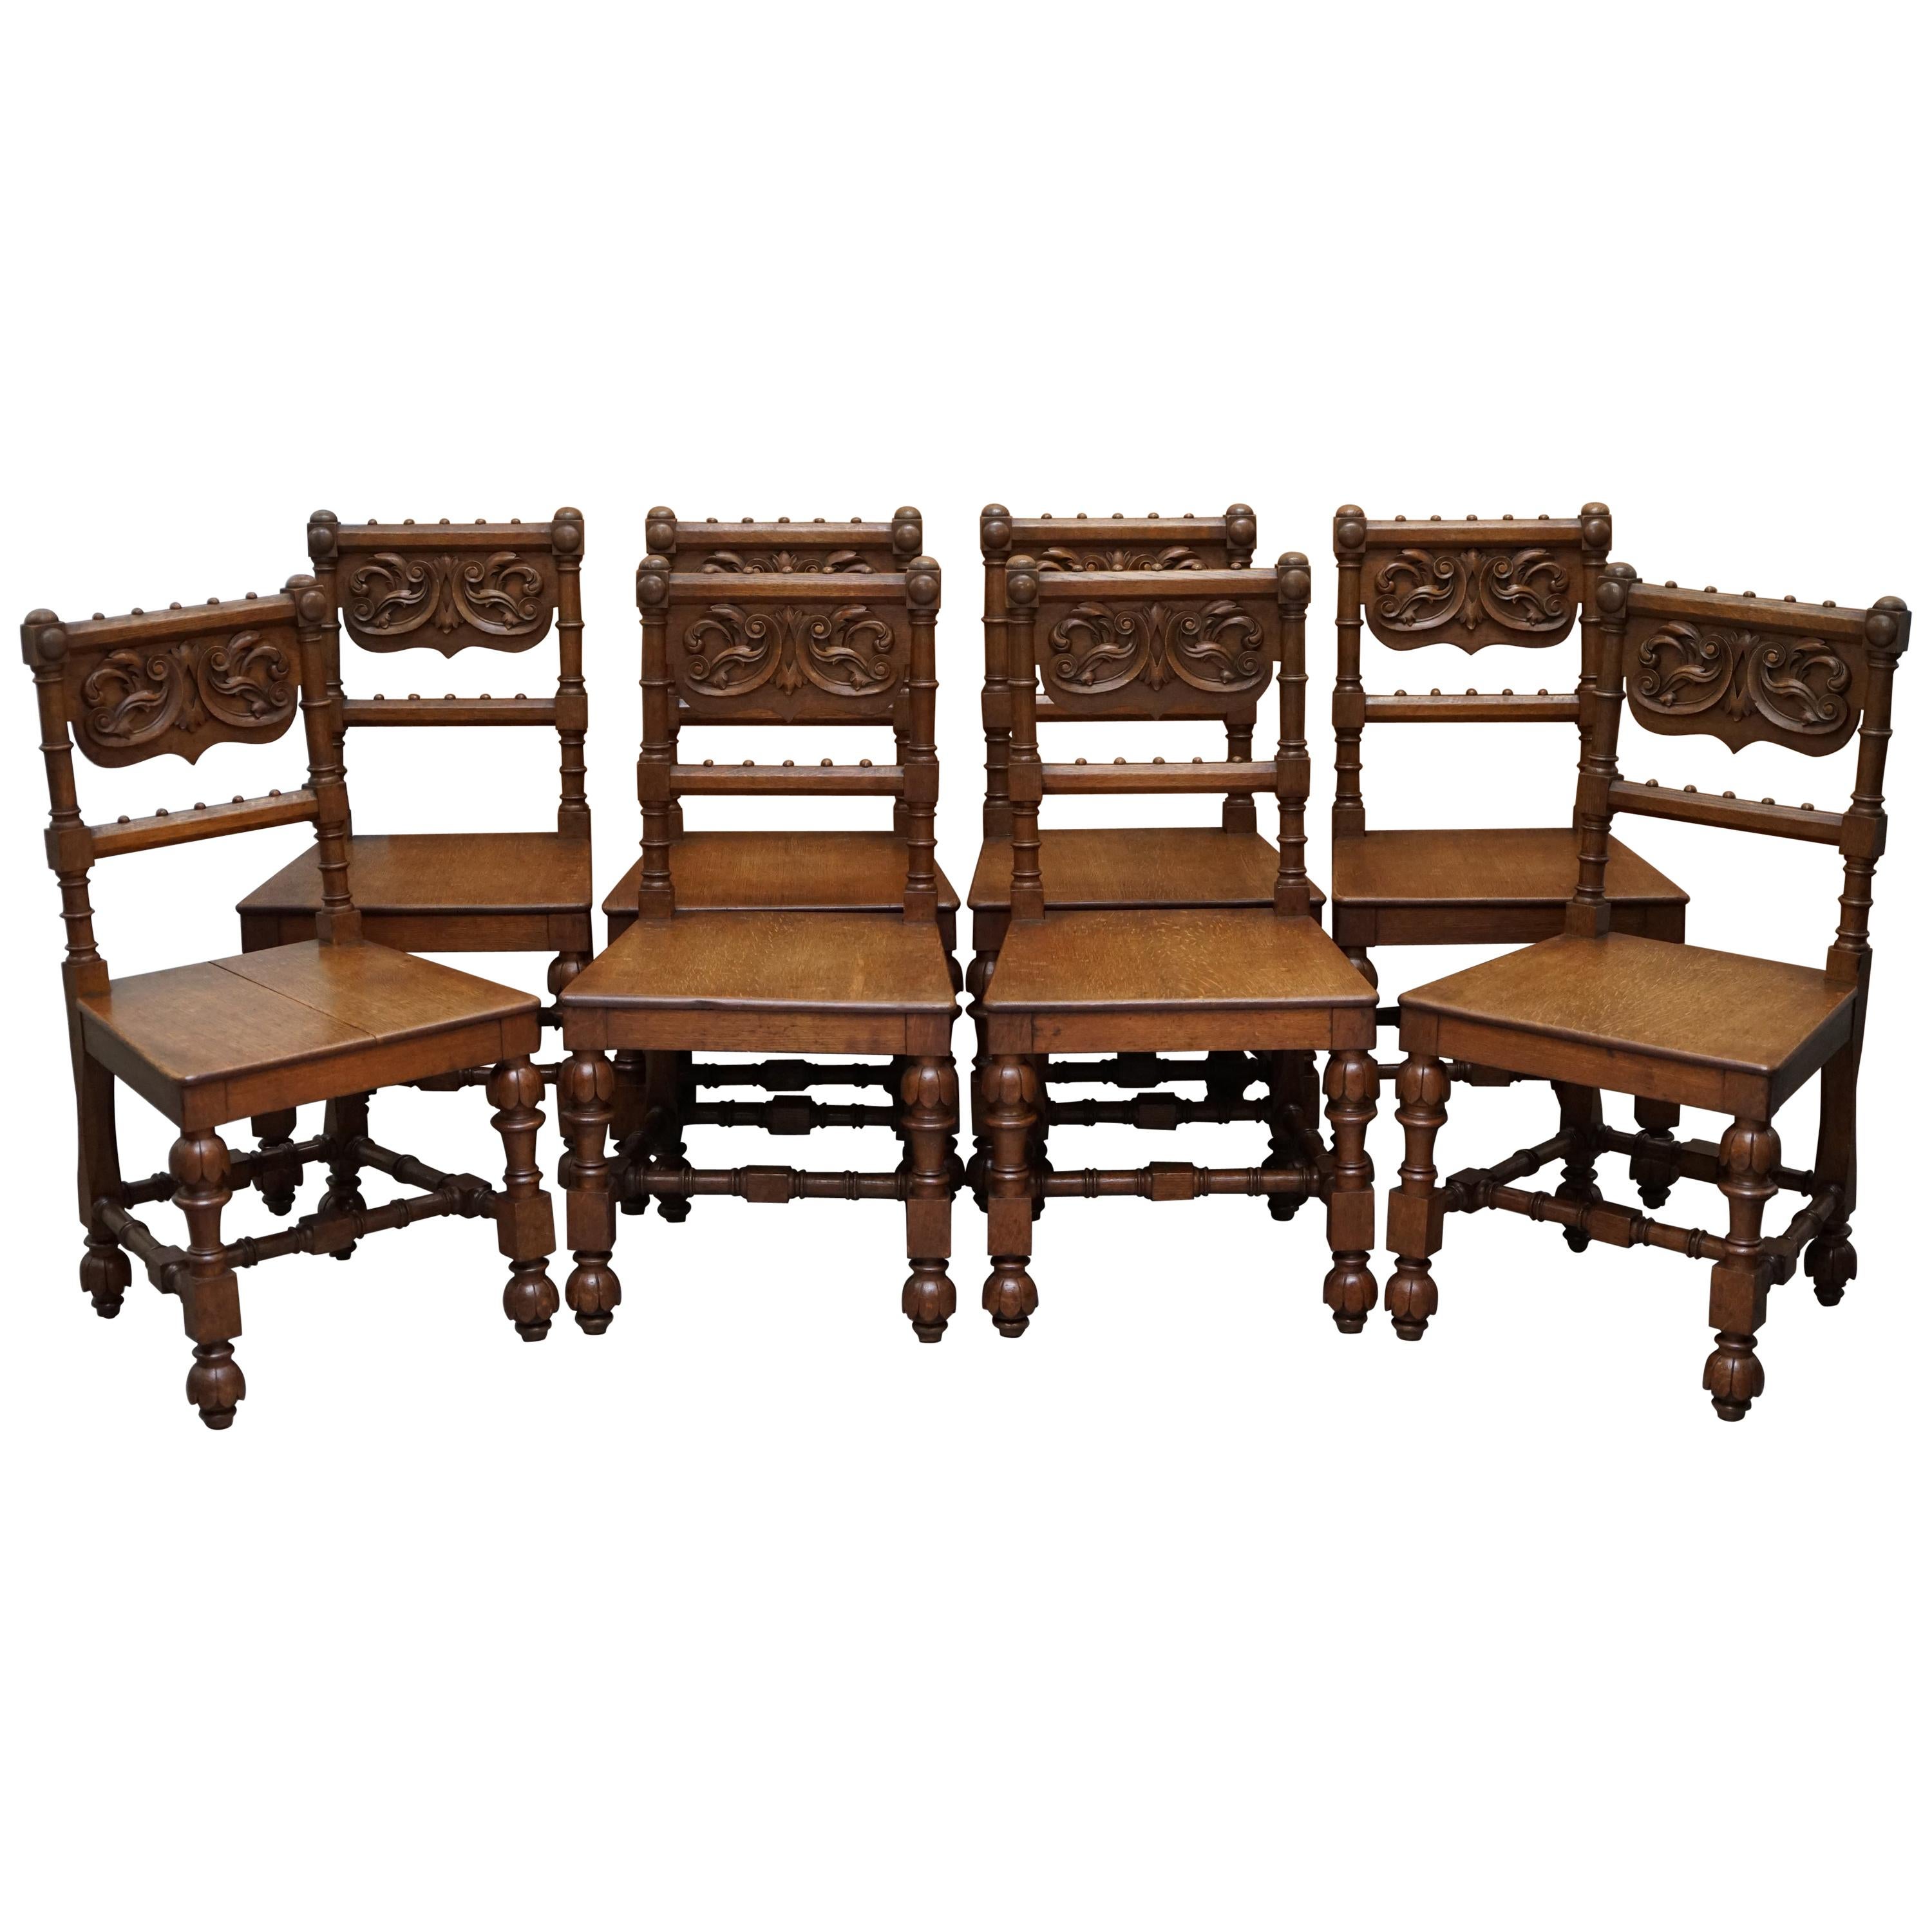 Acht handgeschnitzte Esszimmerstühle aus Nussbaum im gotischen Stil um 1840 Atemberaubende Gestelle